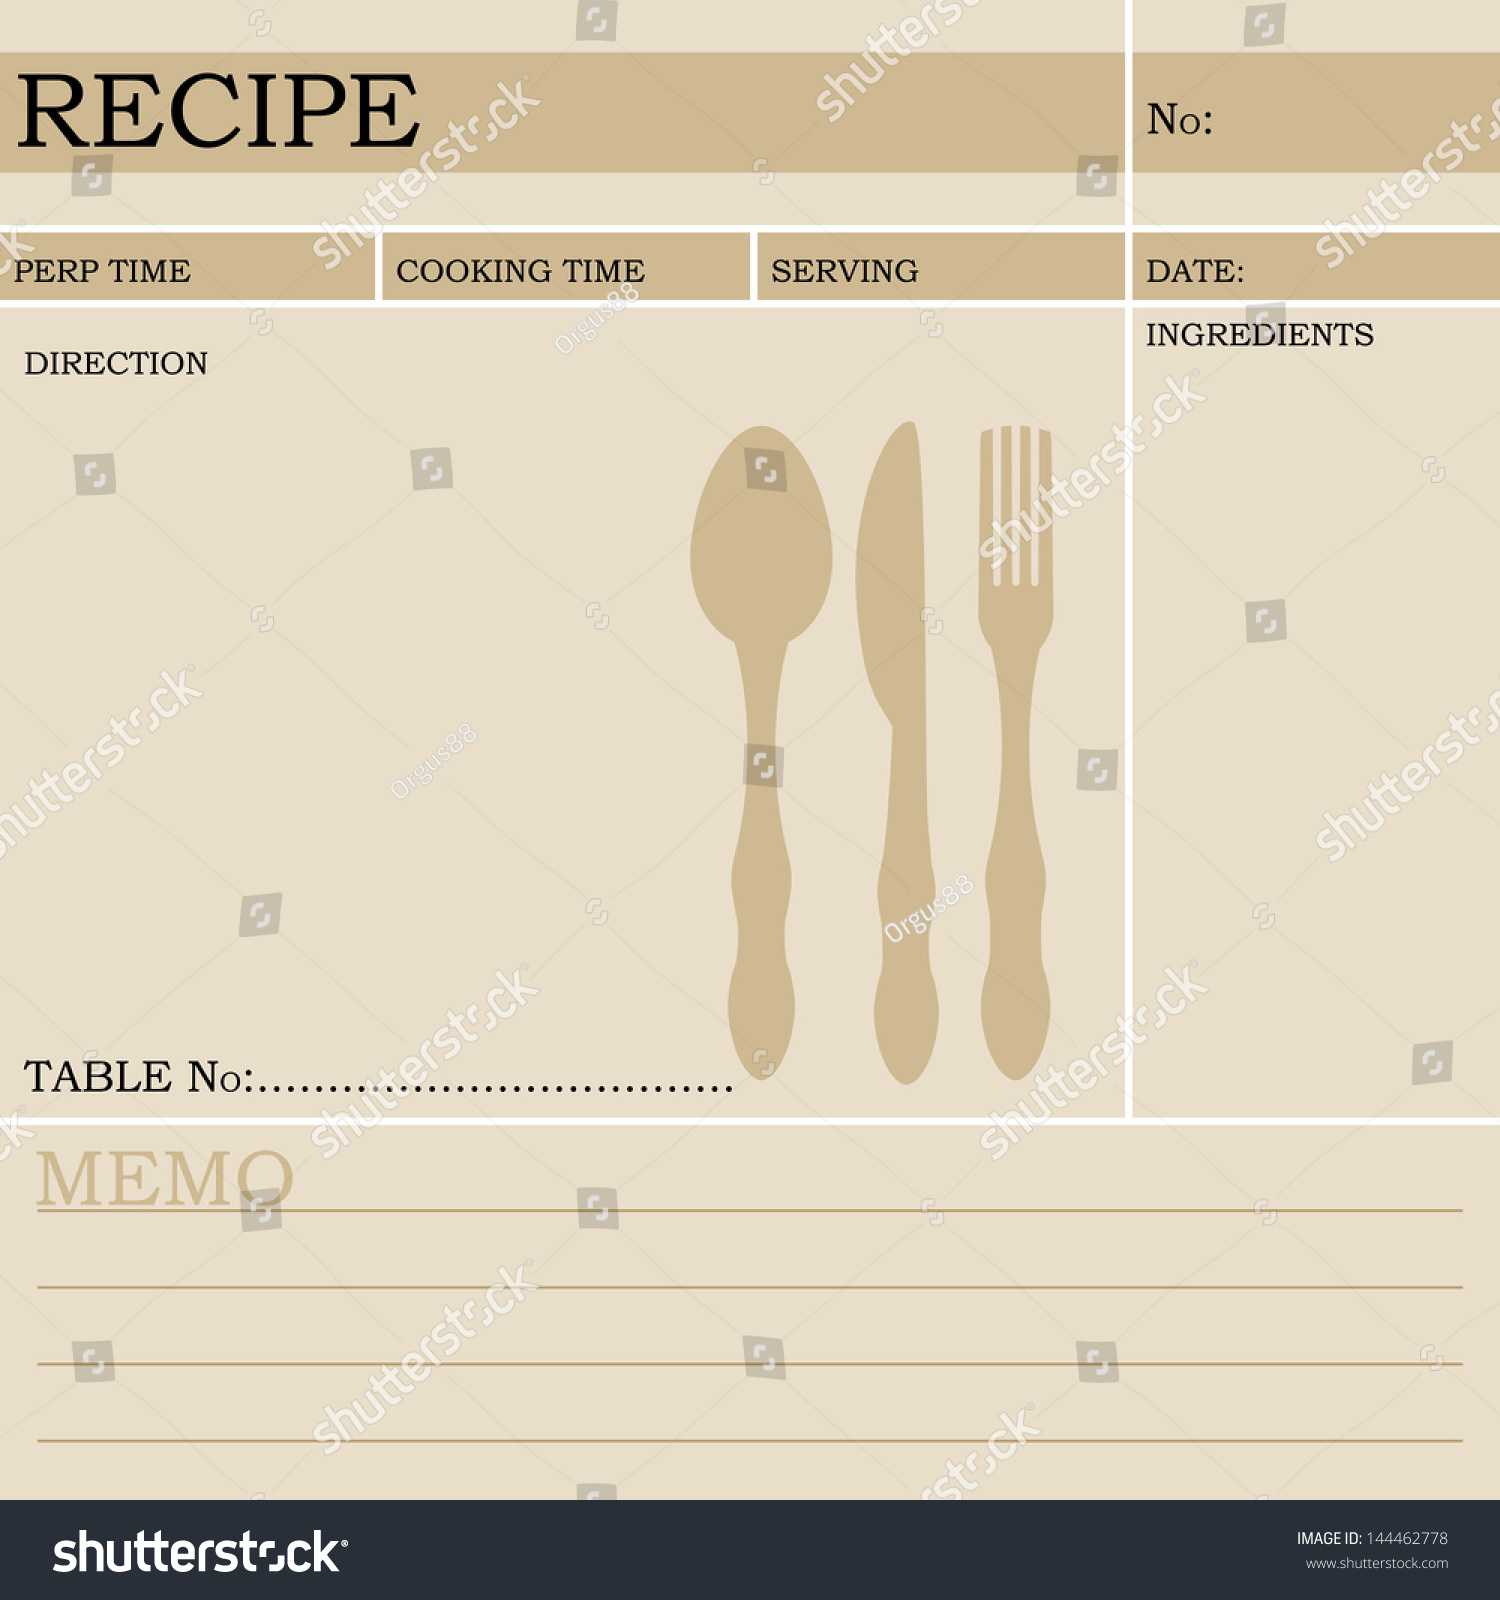 Restaurant Recipe Kitchen Note Template Menu Stock Vector Within Restaurant Recipe Card Template